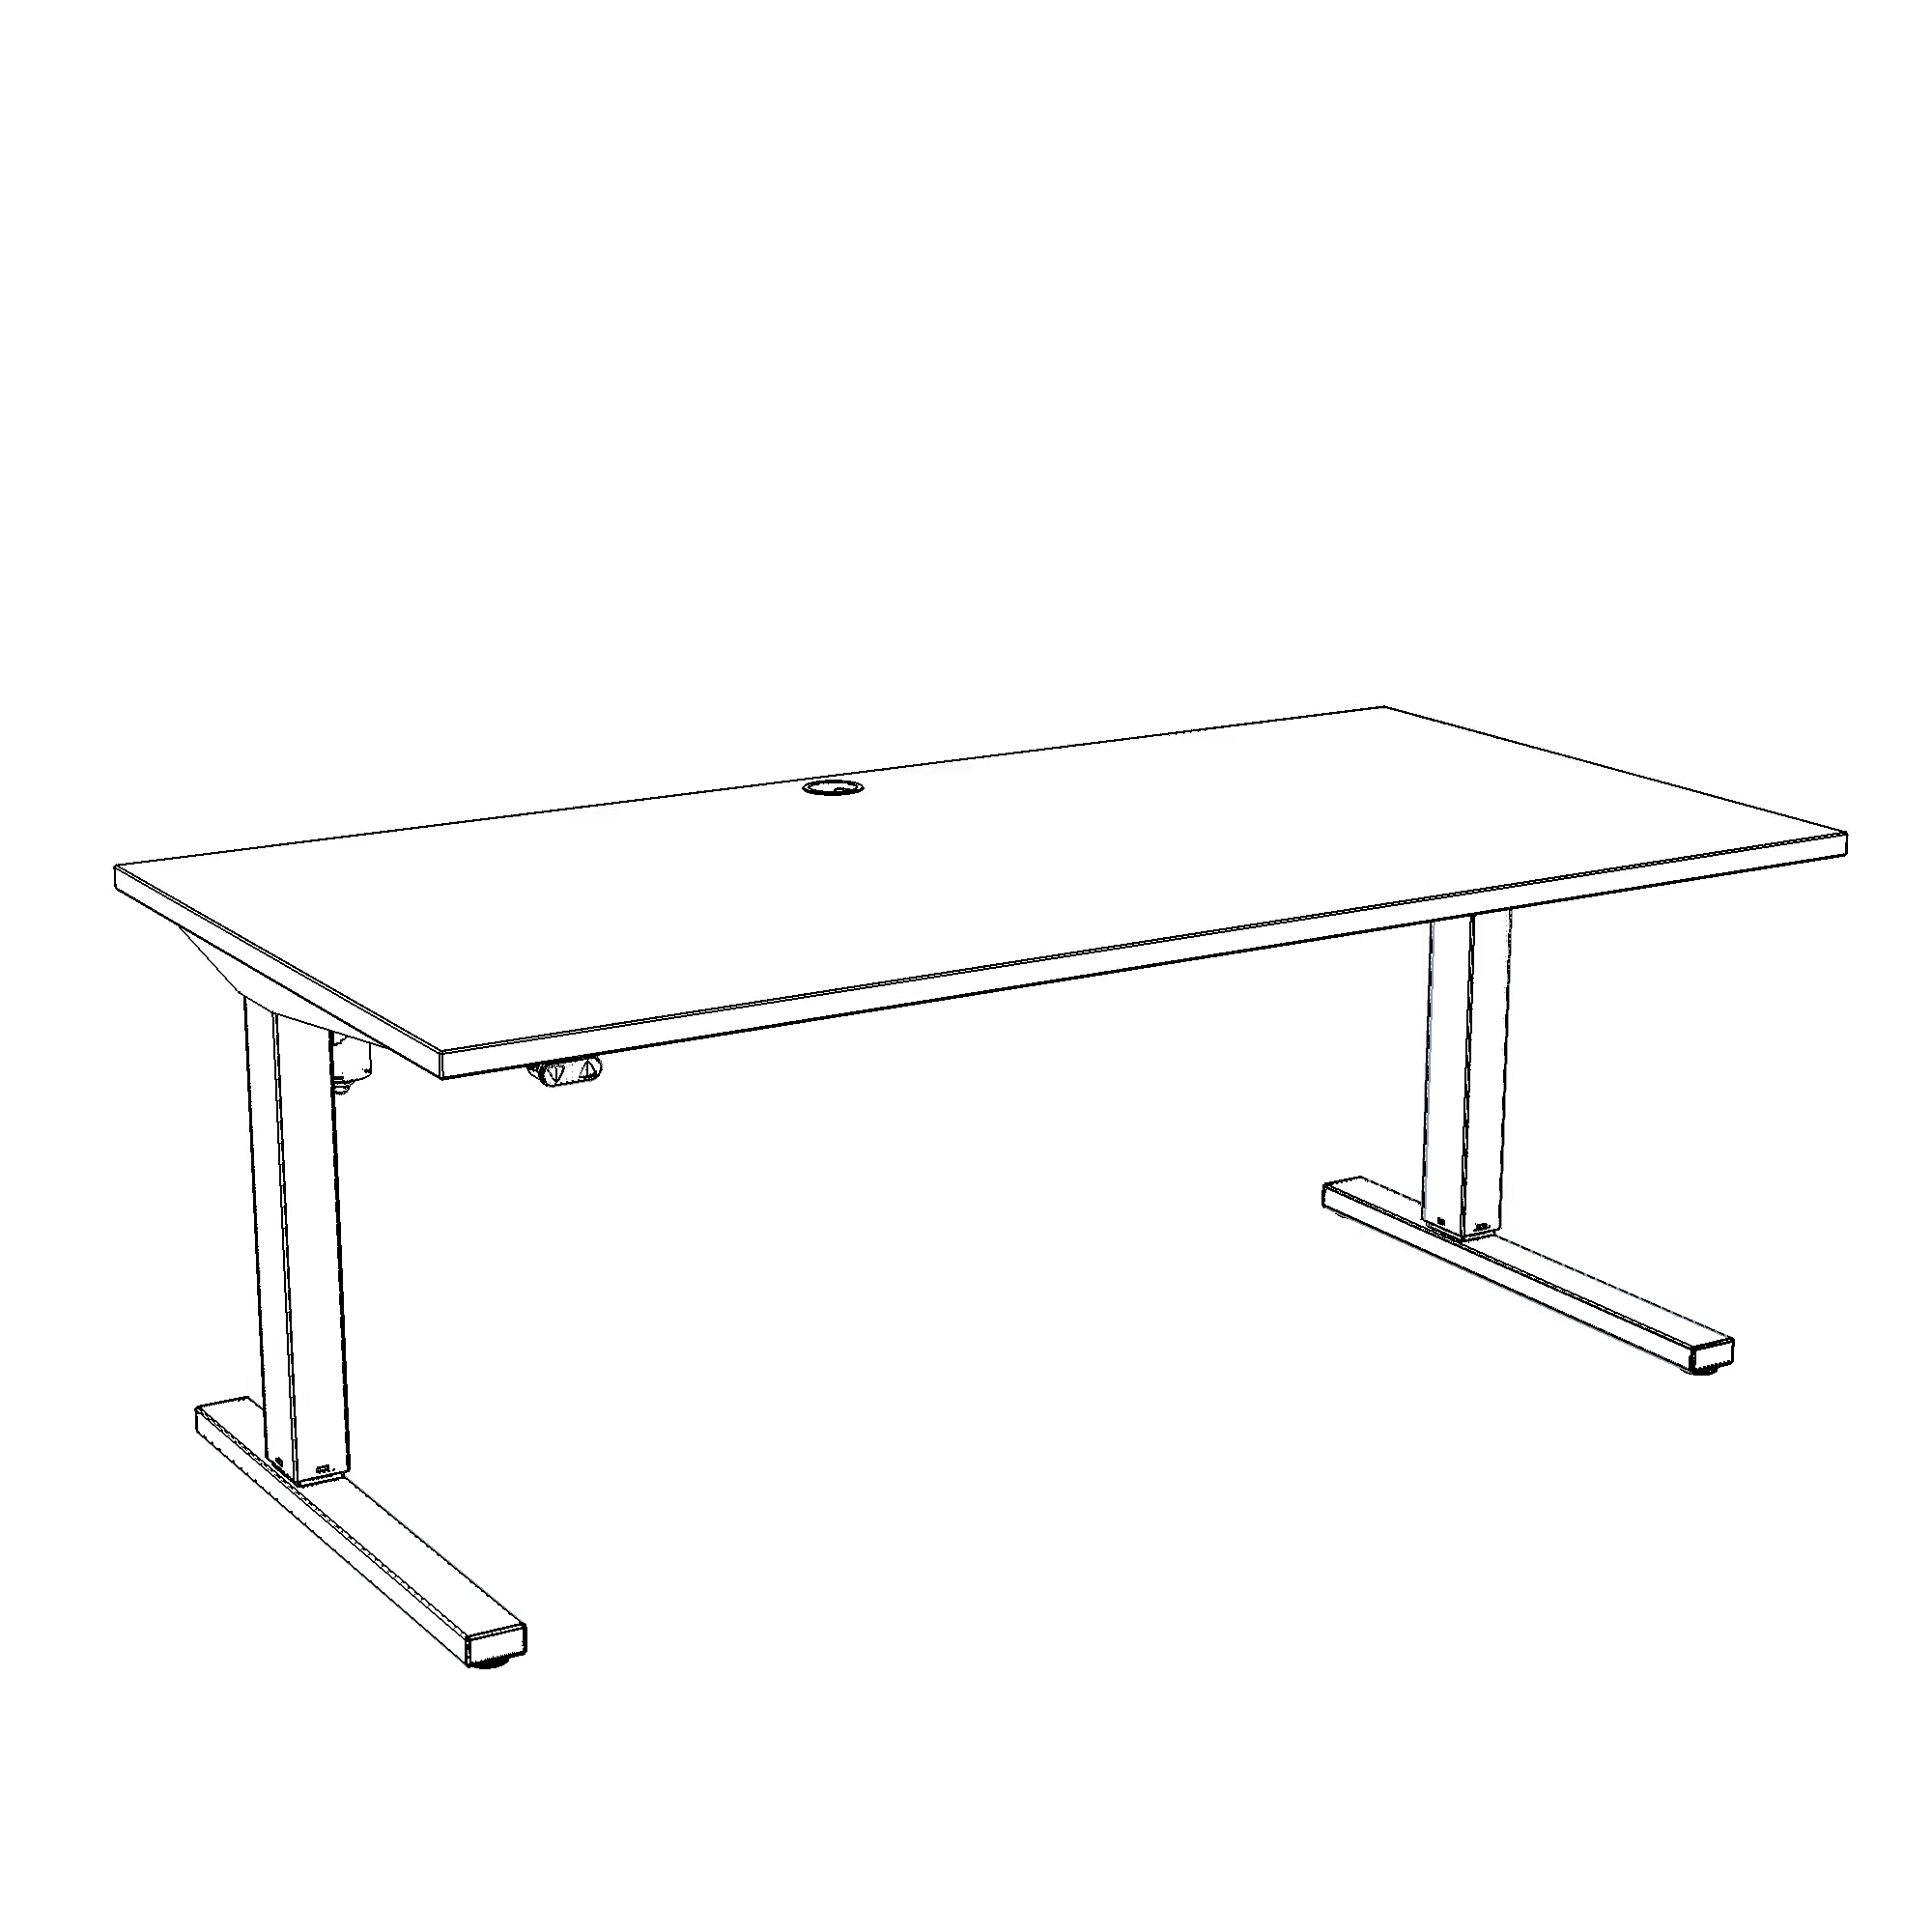 Schreibtisch steh/sitz | 160x80 cm | Buche mit grauem Gestell